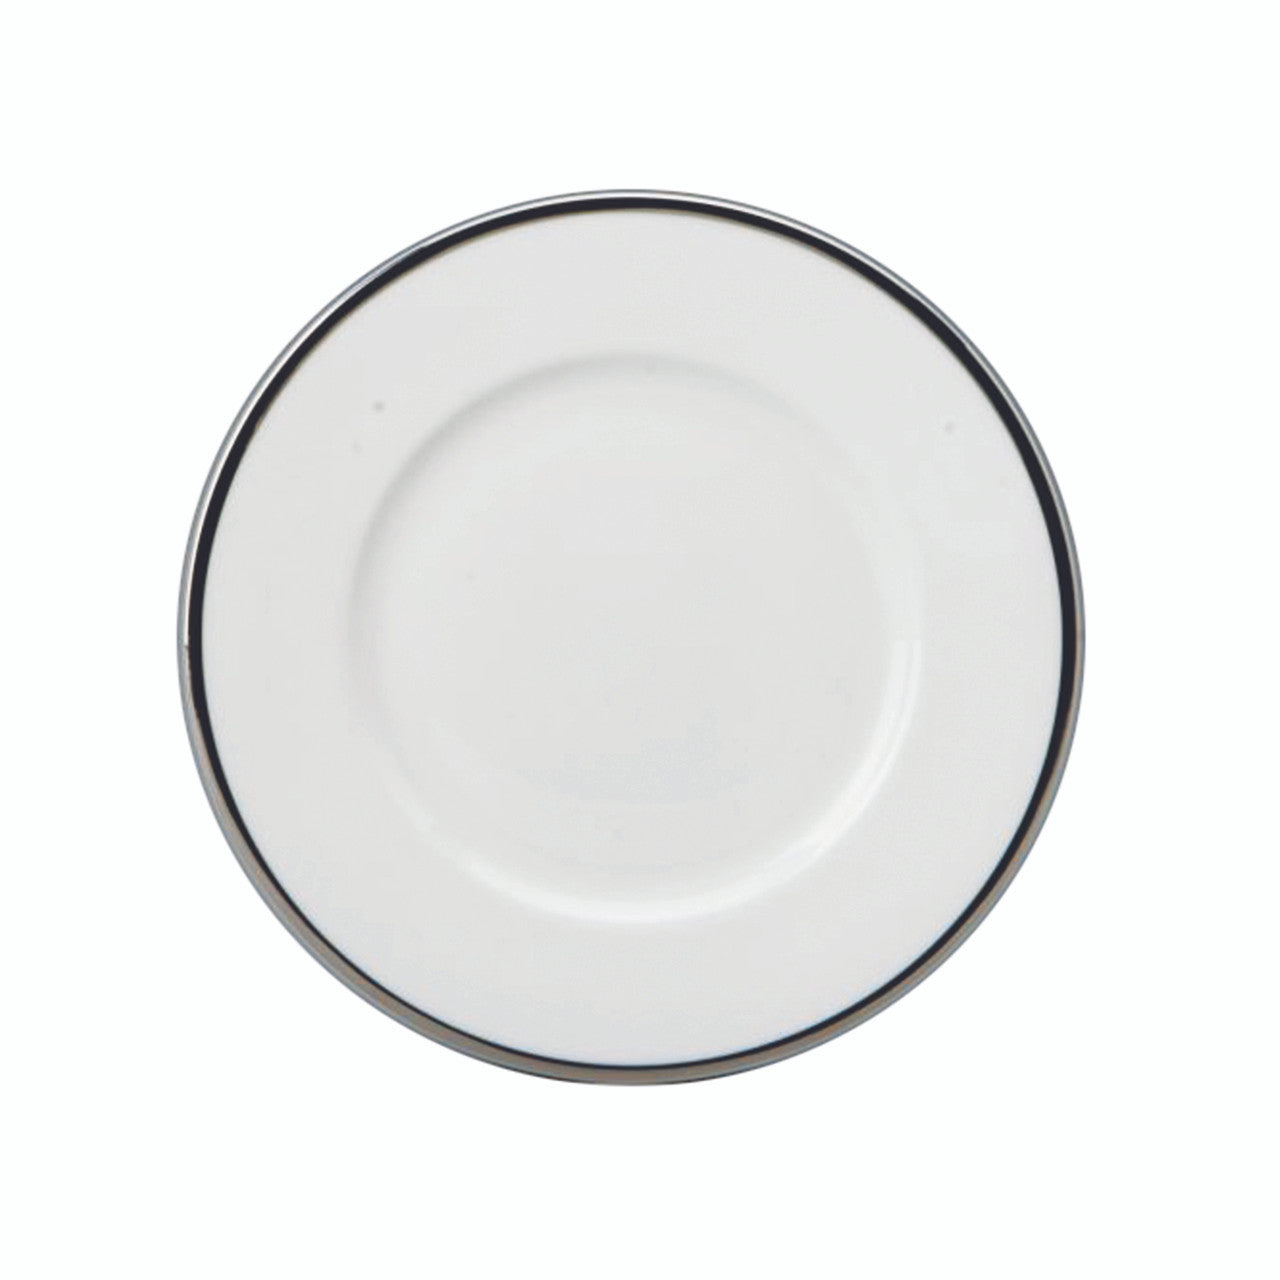 Prouna Comet Salad/Dessert Plate